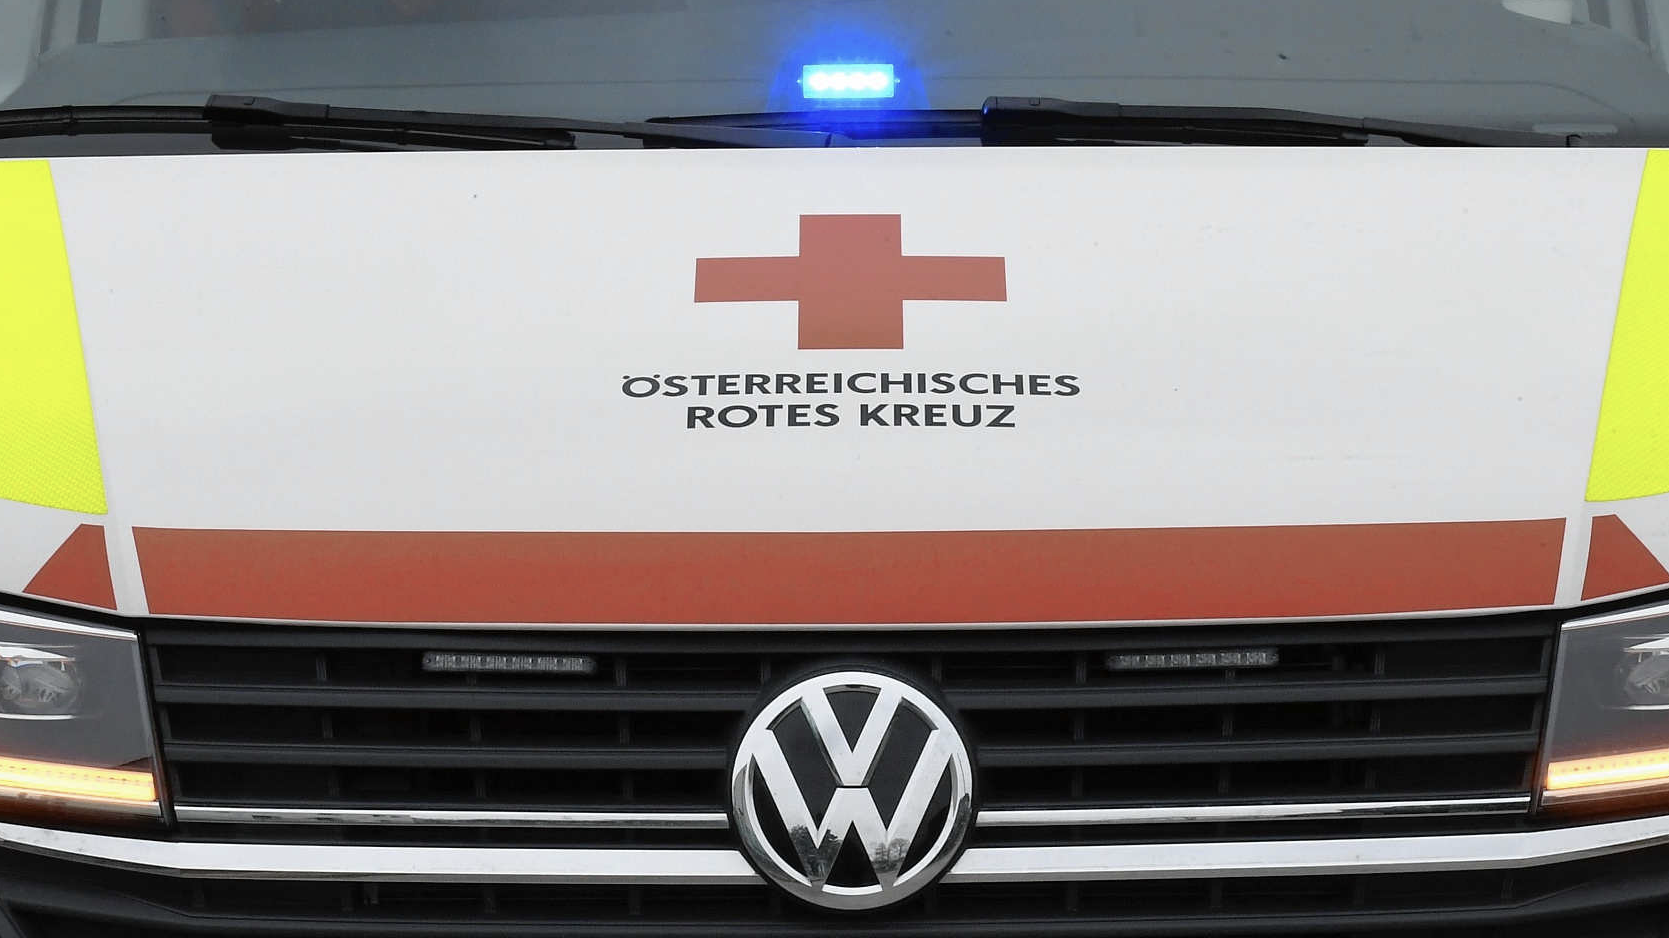 A Vöröskereszt fontos partnere a politikának - és az alsó-ausztriai embereknek. (Bild: Patrick Huber)